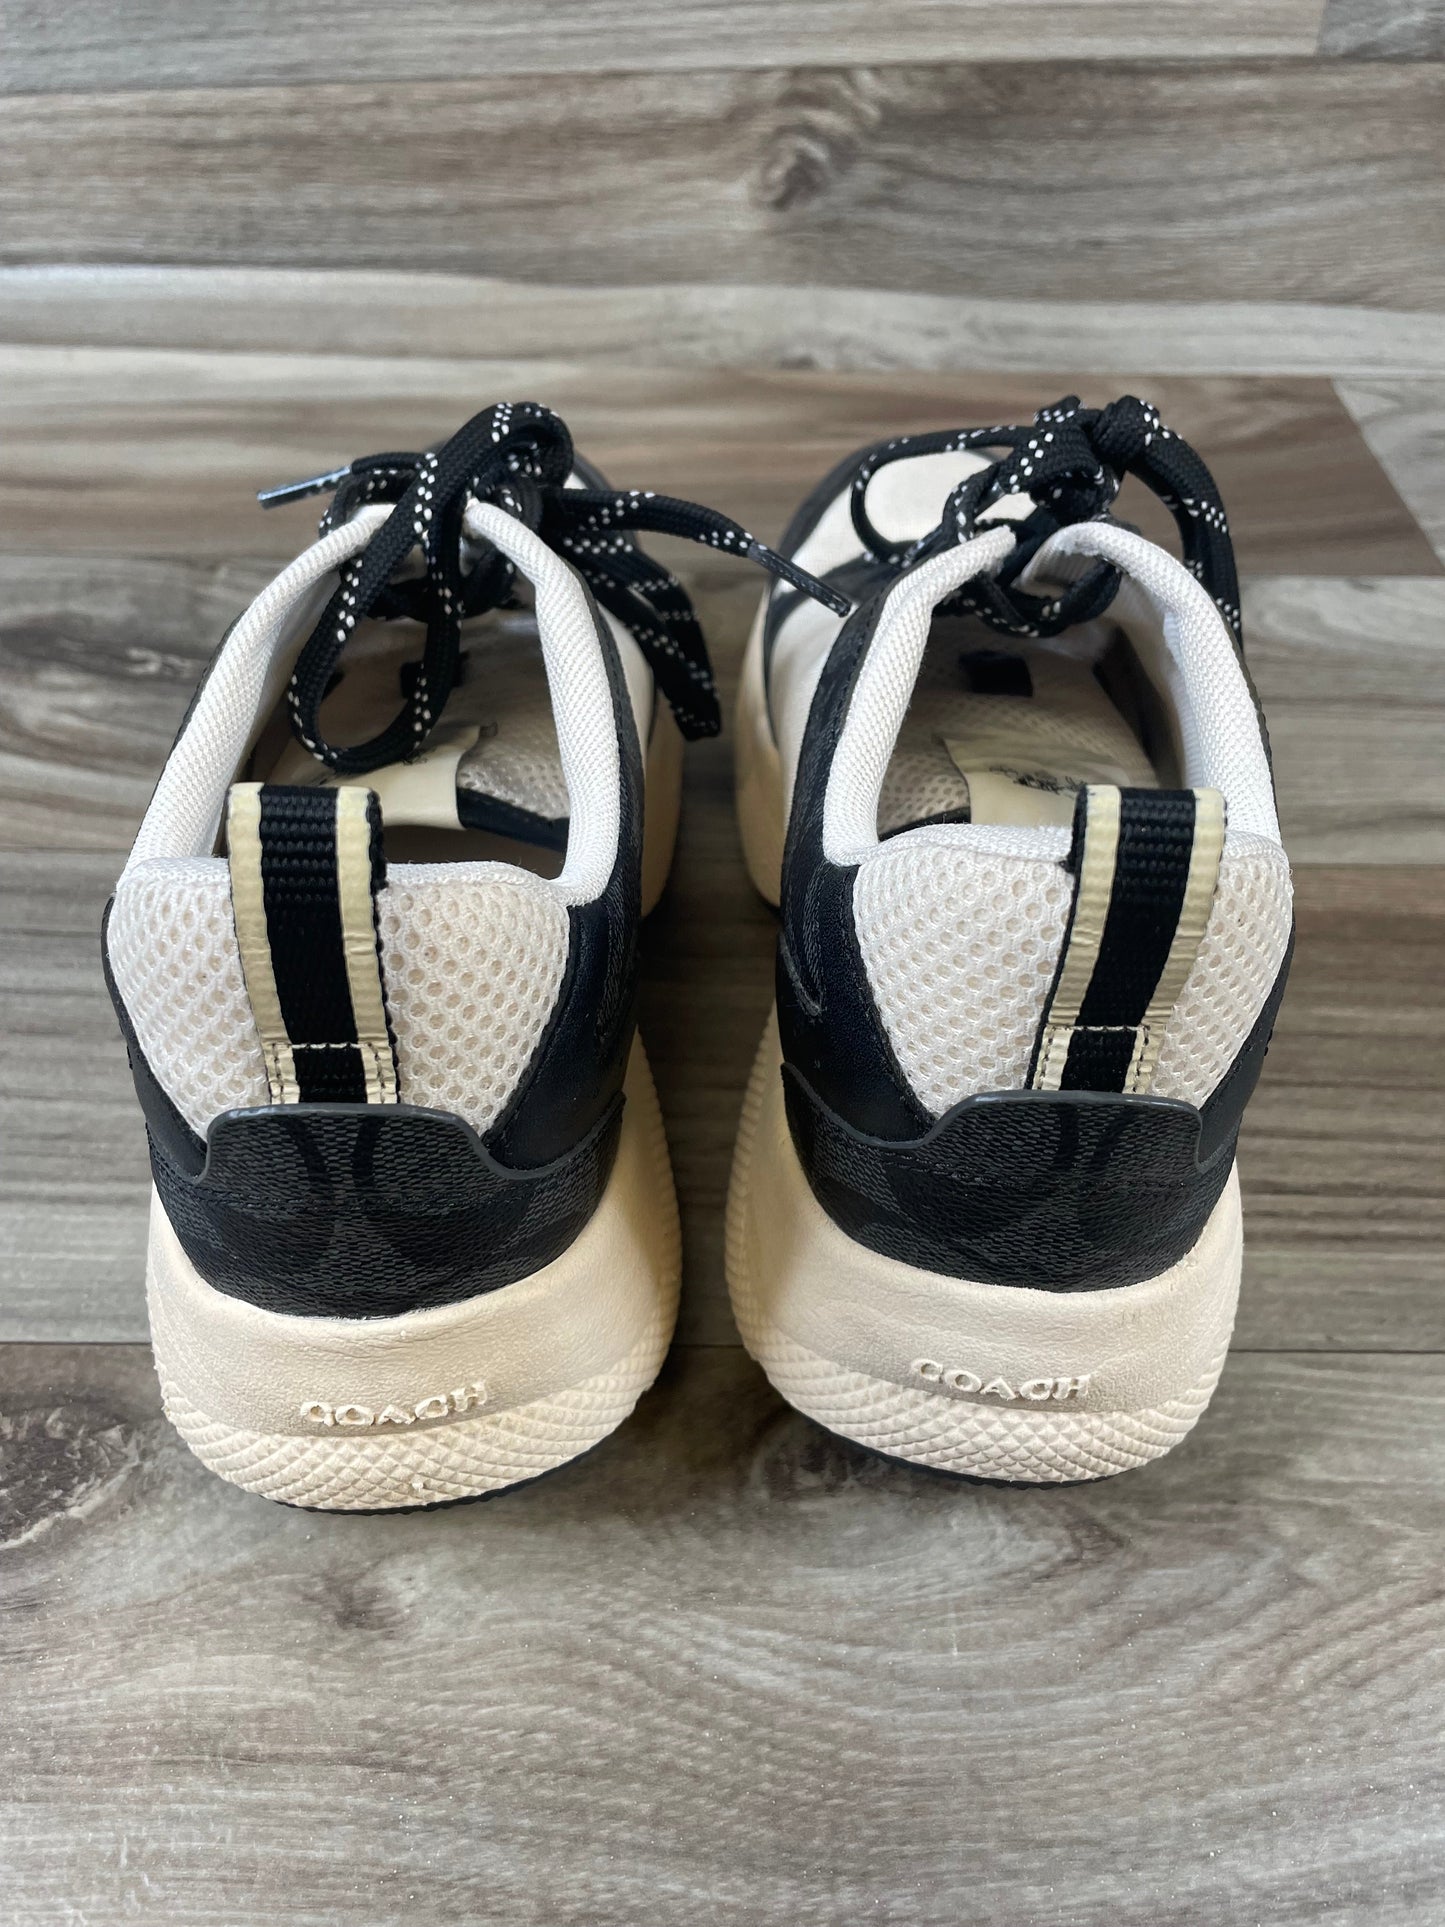 Black & Tan Shoes Designer Coach, Size 7.5